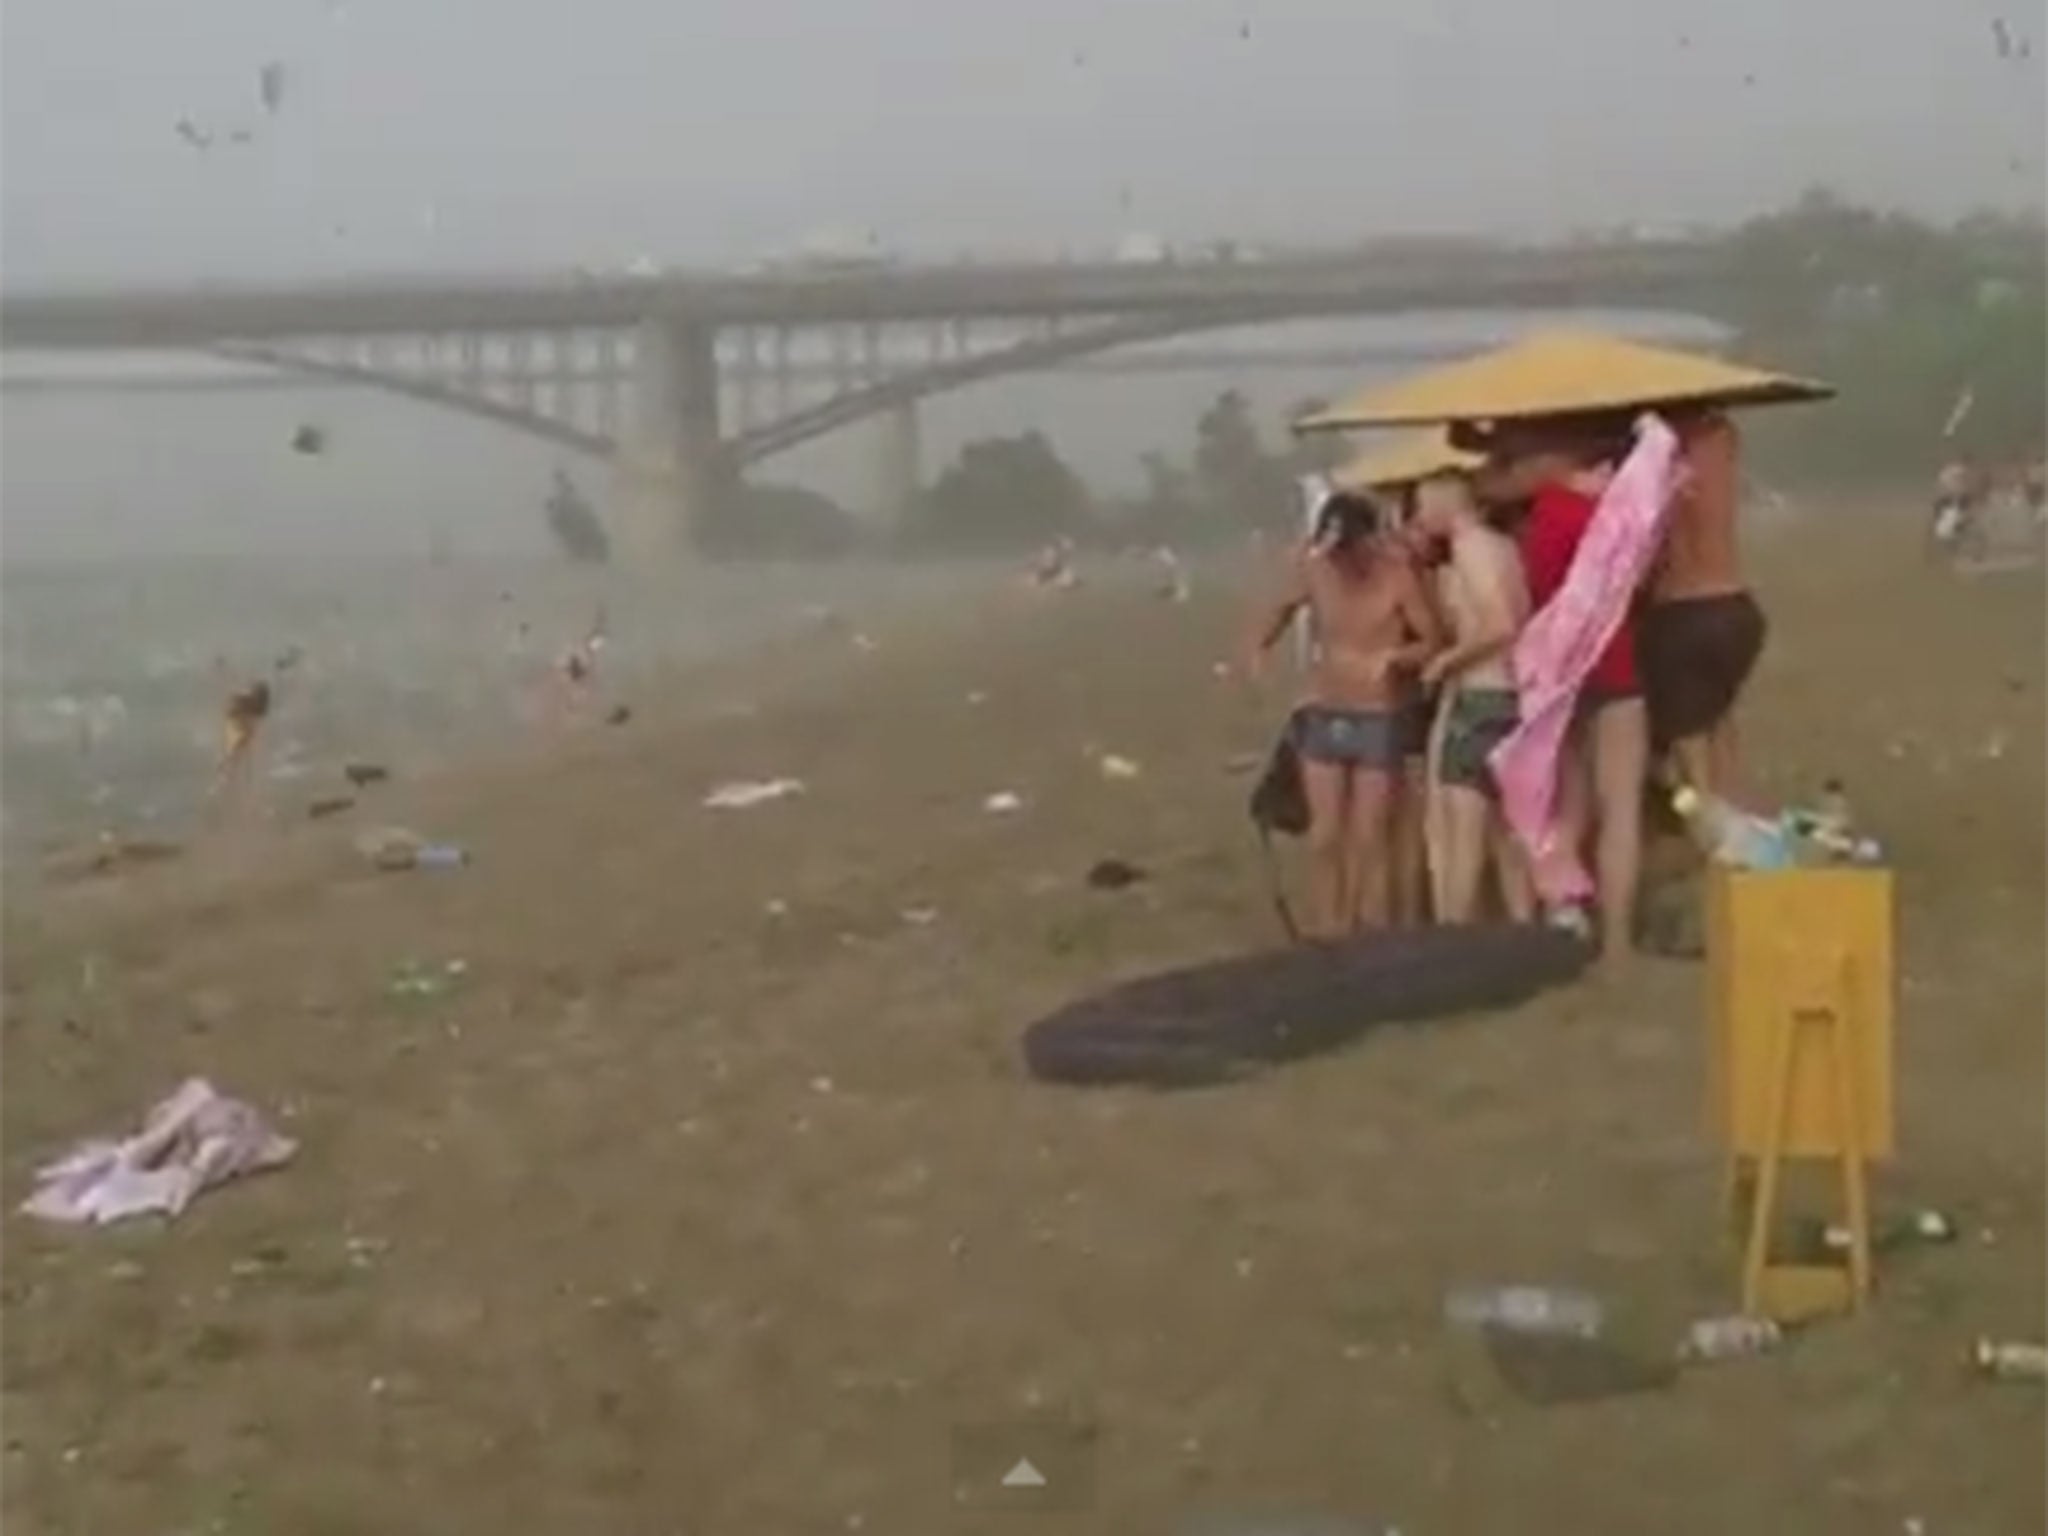 Beach-goers seek cover under an umbrella